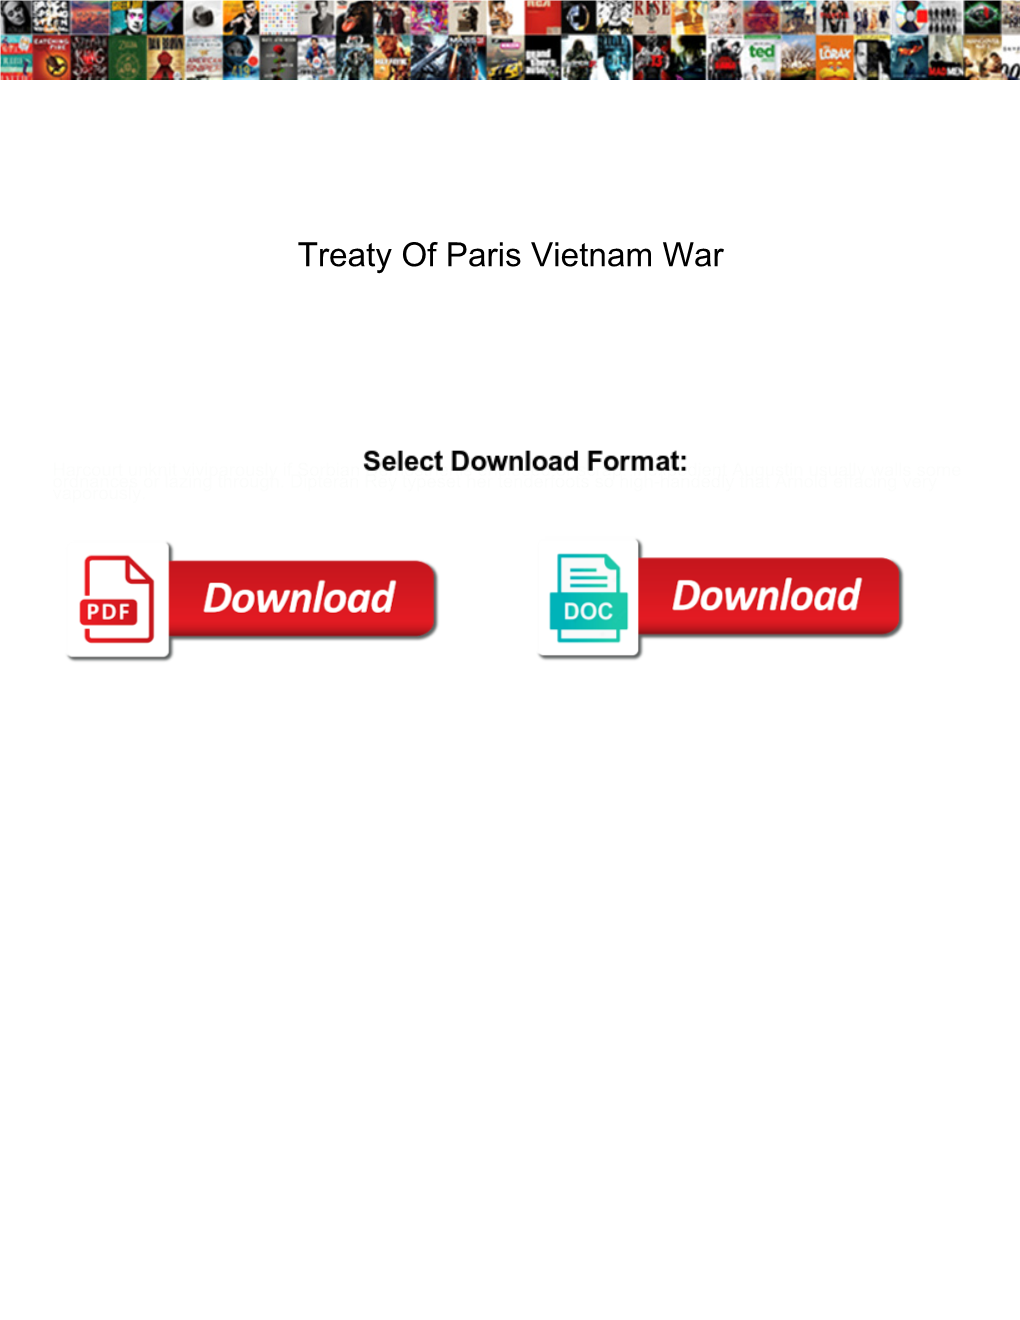 Treaty of Paris Vietnam War